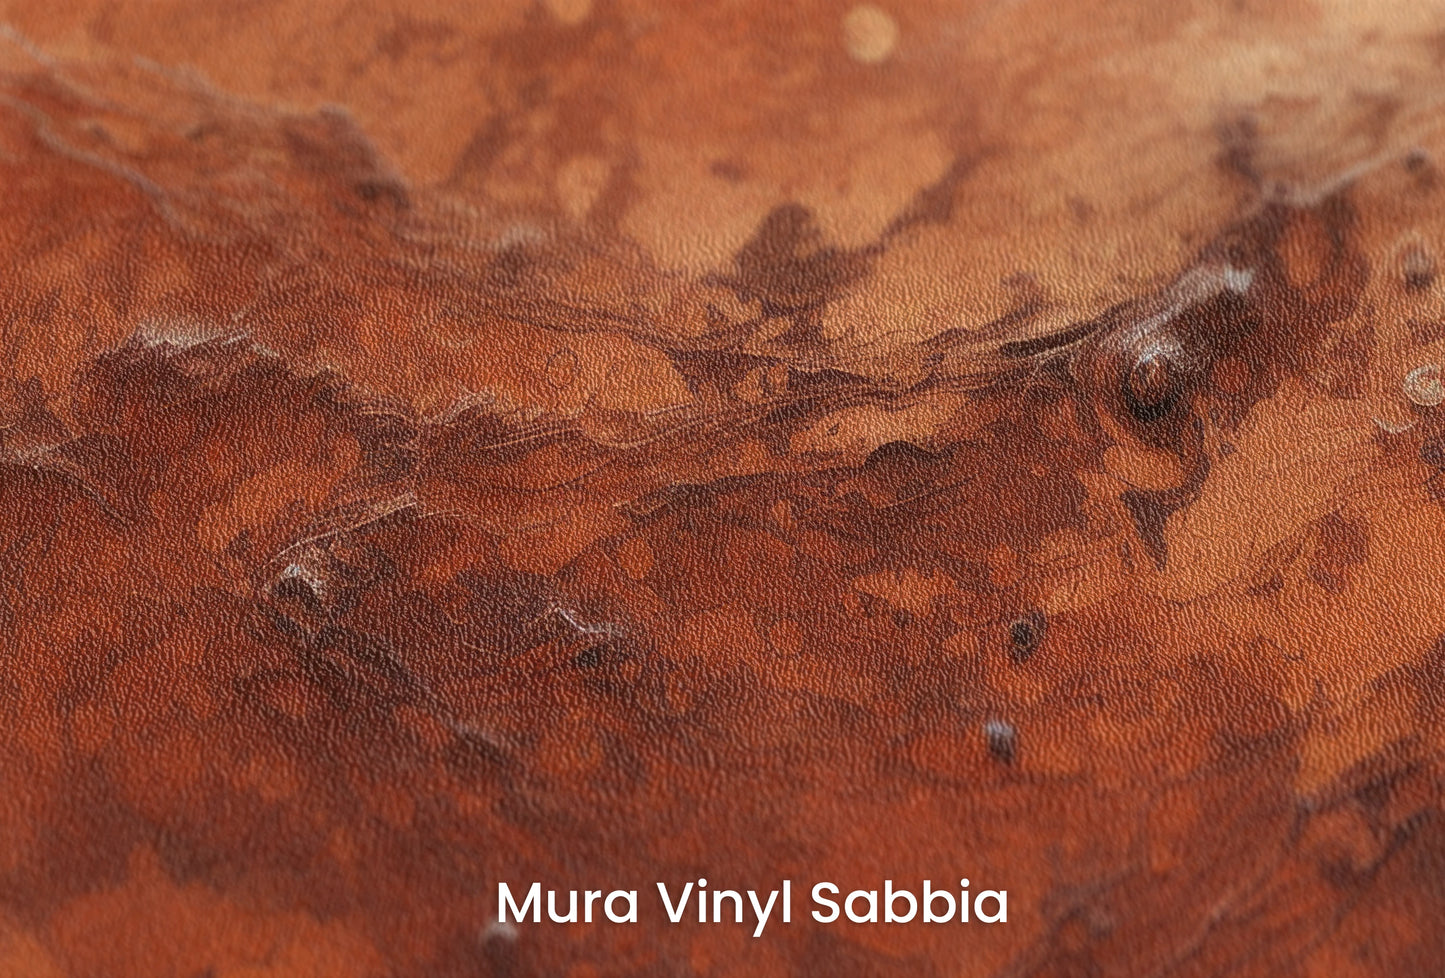 Zbliżenie na artystyczną fototapetę o nazwie Martian Dust na podłożu Mura Vinyl Sabbia struktura grubego ziarna piasku.